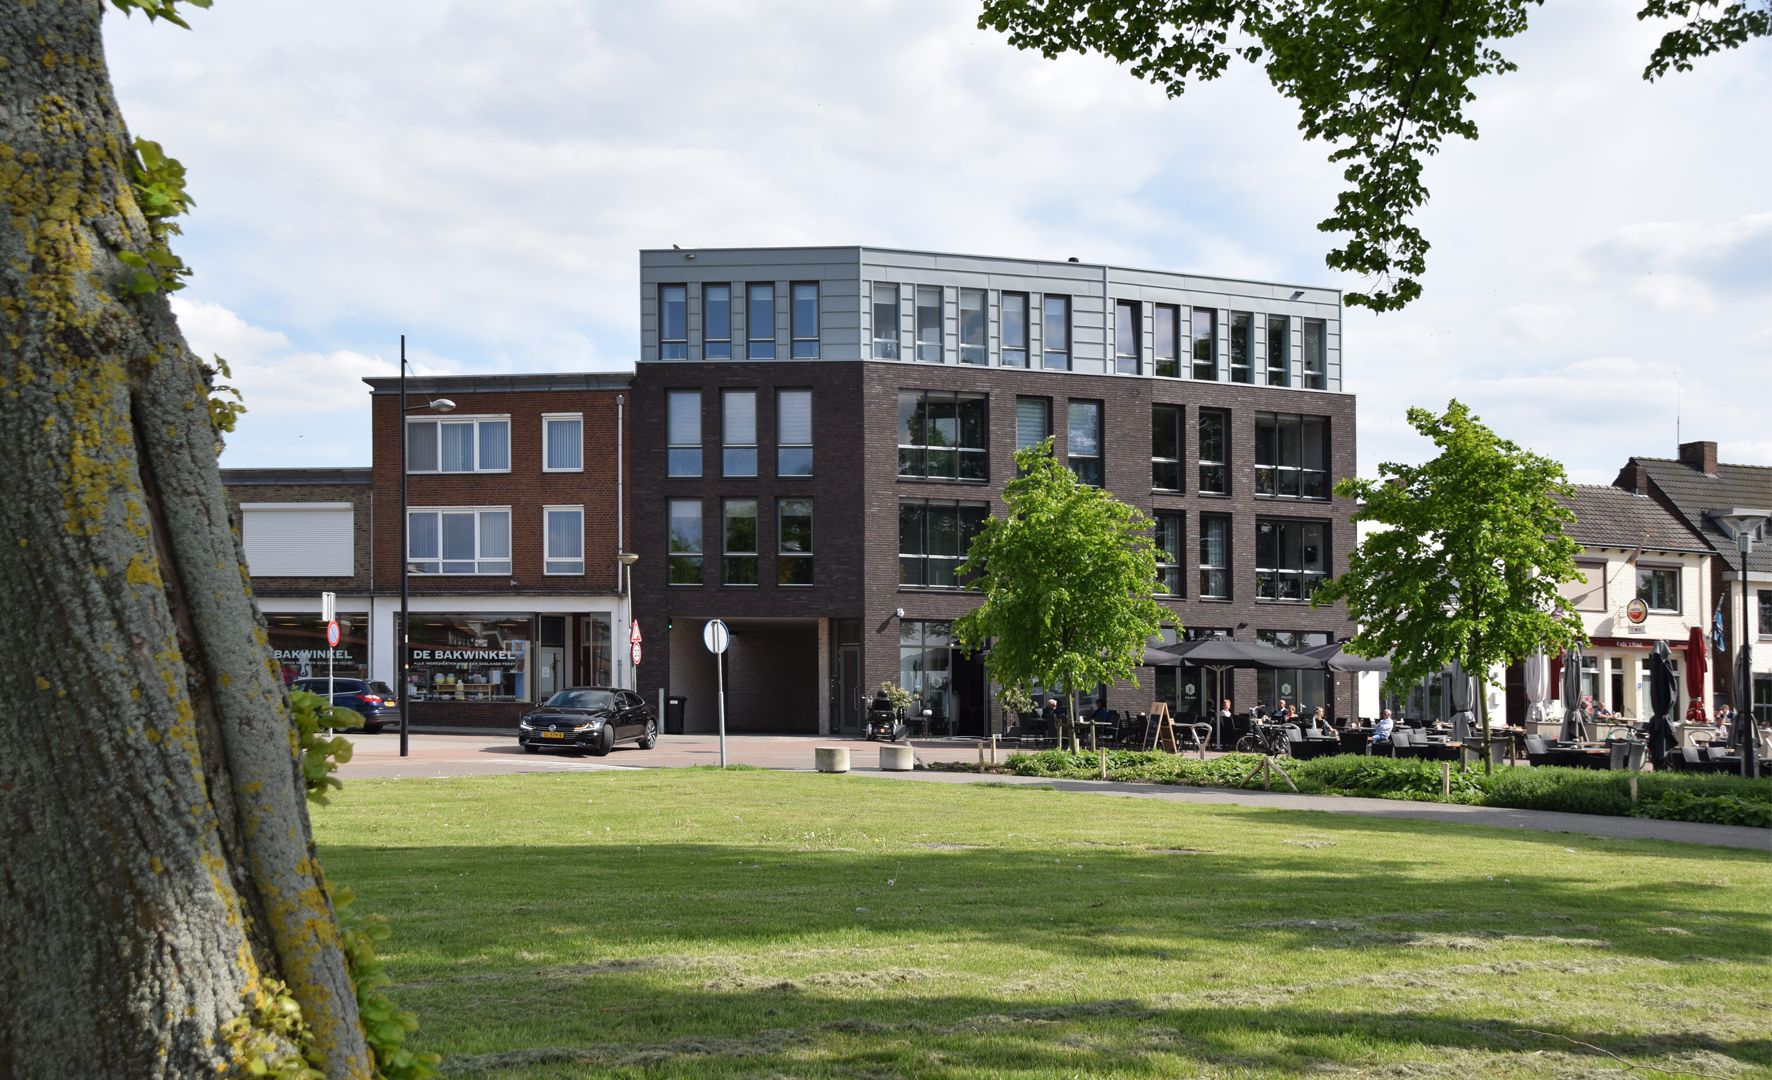 Appartementen en horeca aan de haven - Maasbracht , Engelman Architecten